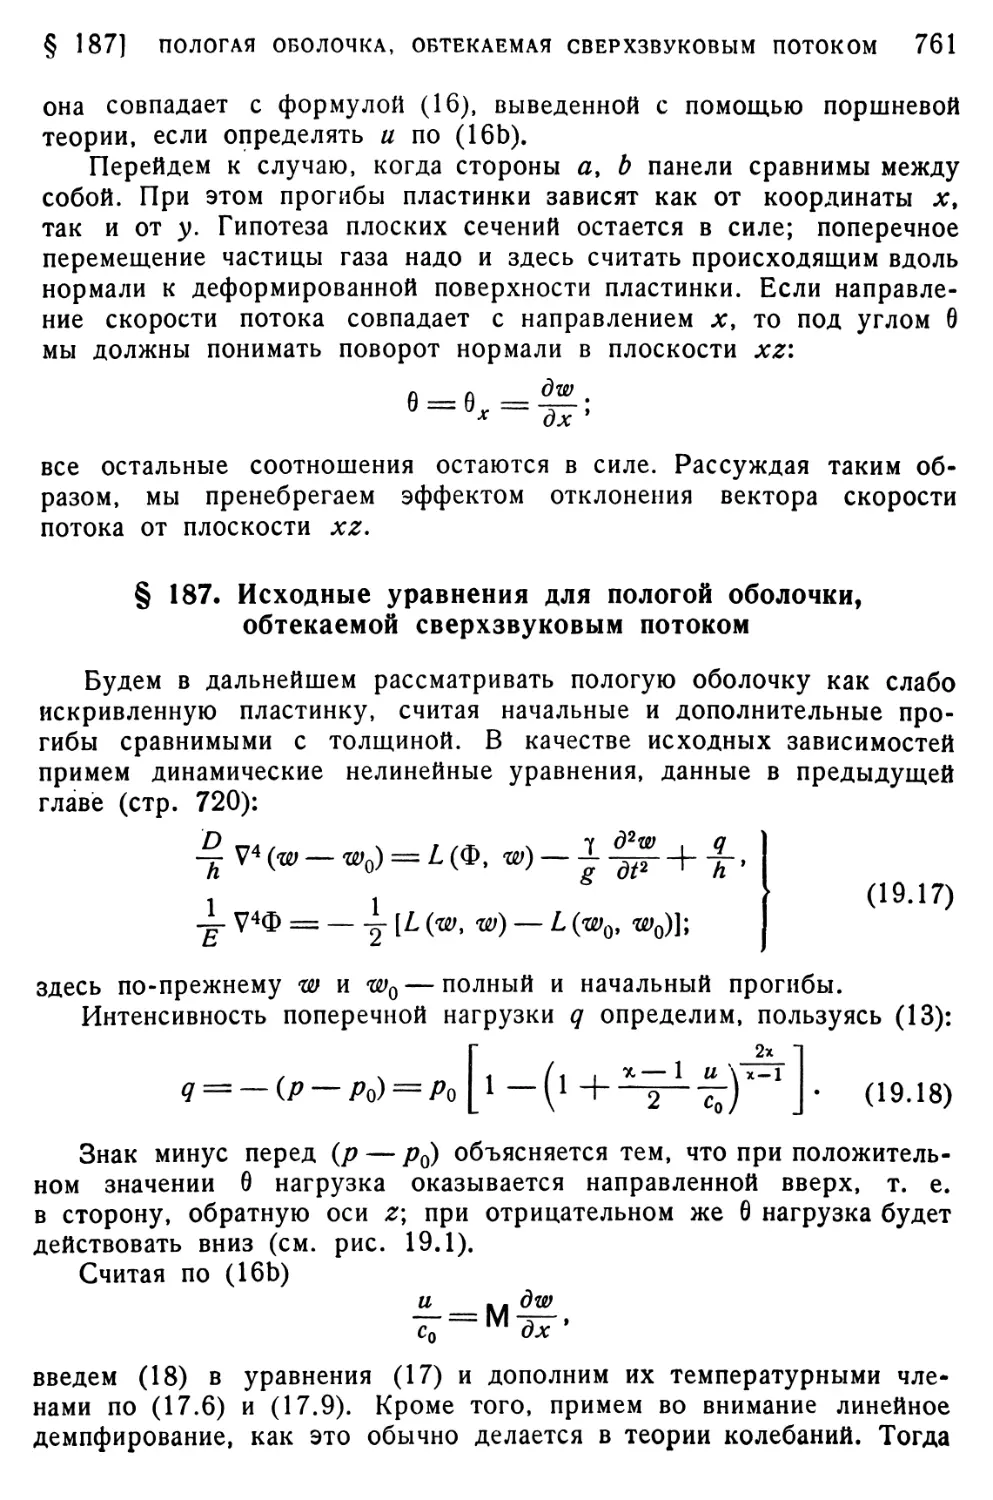 § 187. Исходные уравнения для пологой оболочки, обтекаемой сверхзвуковым потоком